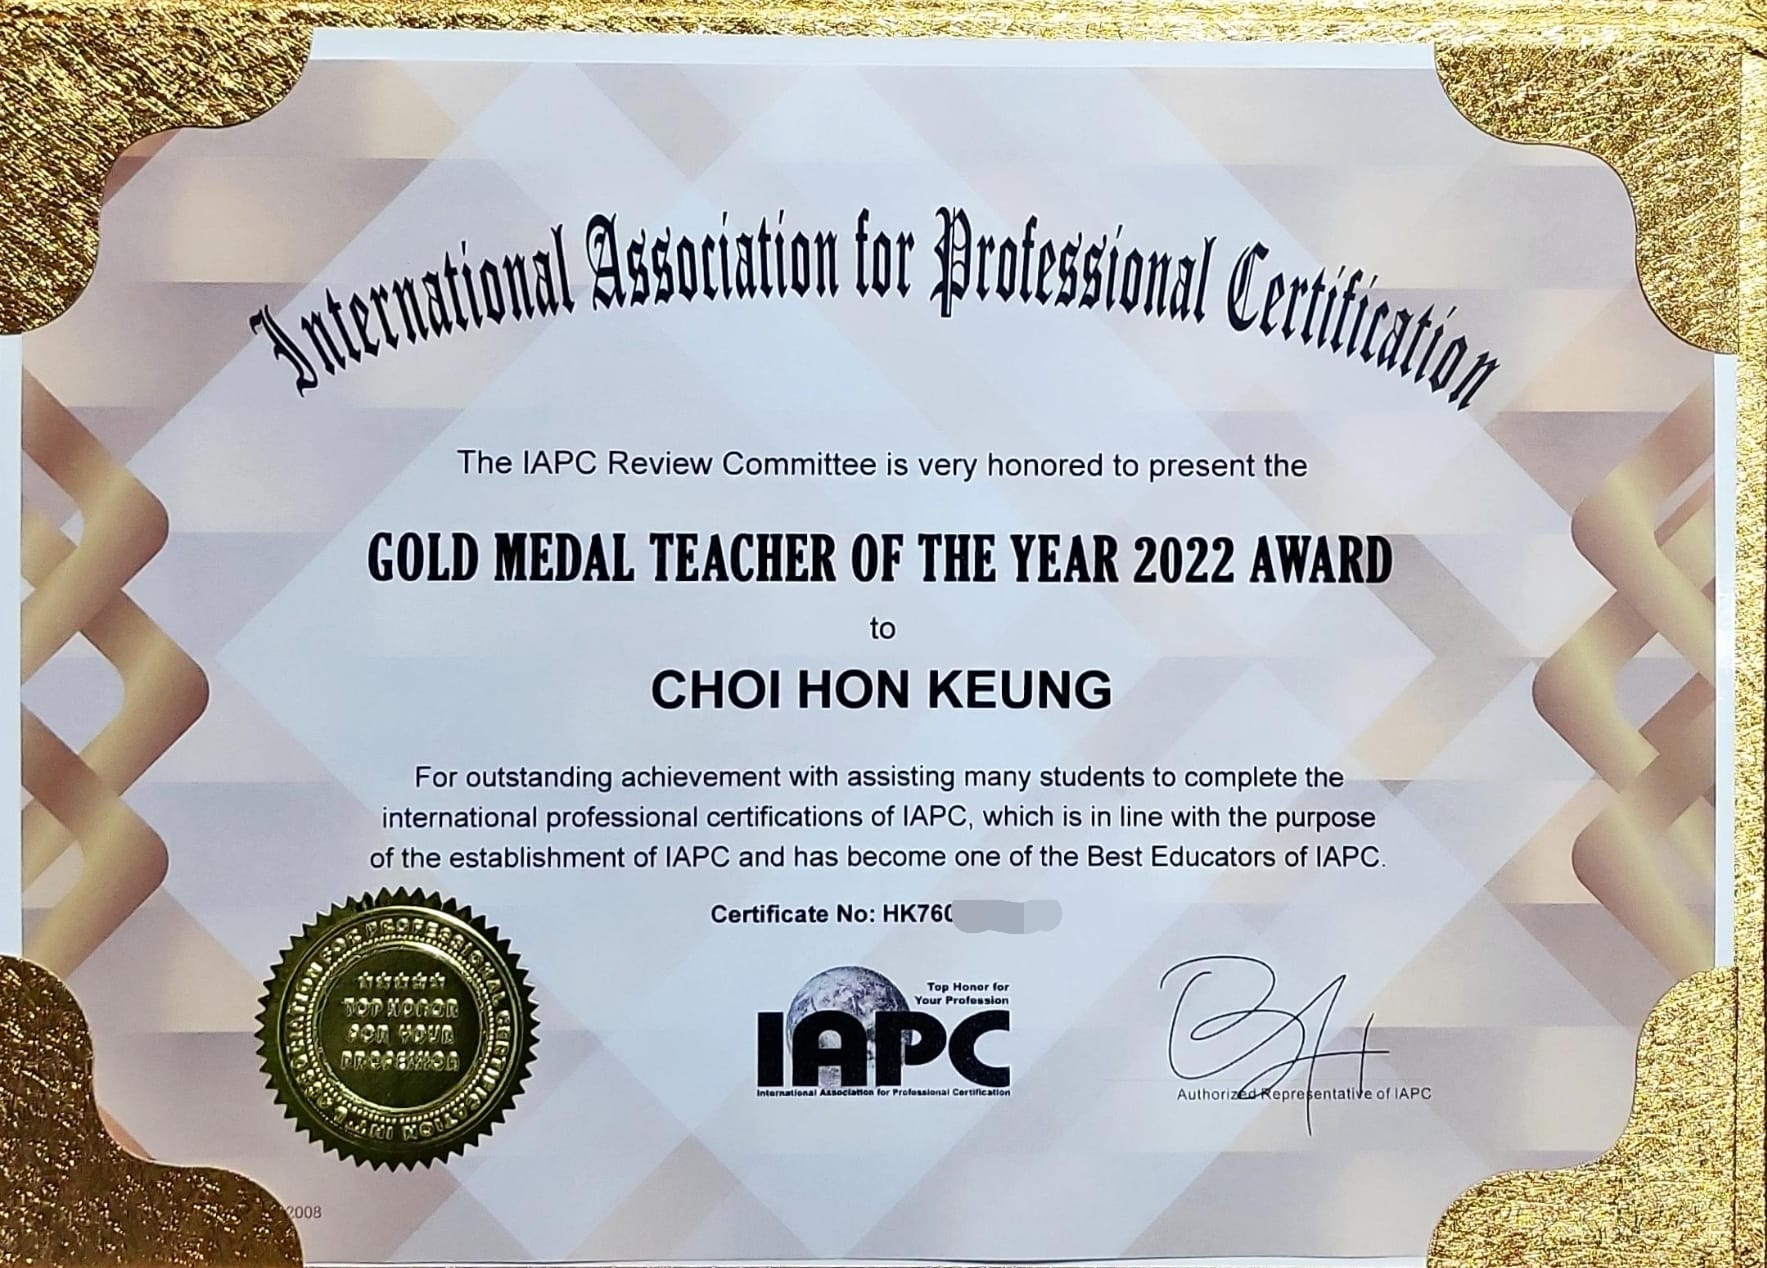 2021-2022年度兩屆 IAPC(國際專業人才認證協會) 金牌講師獎得主